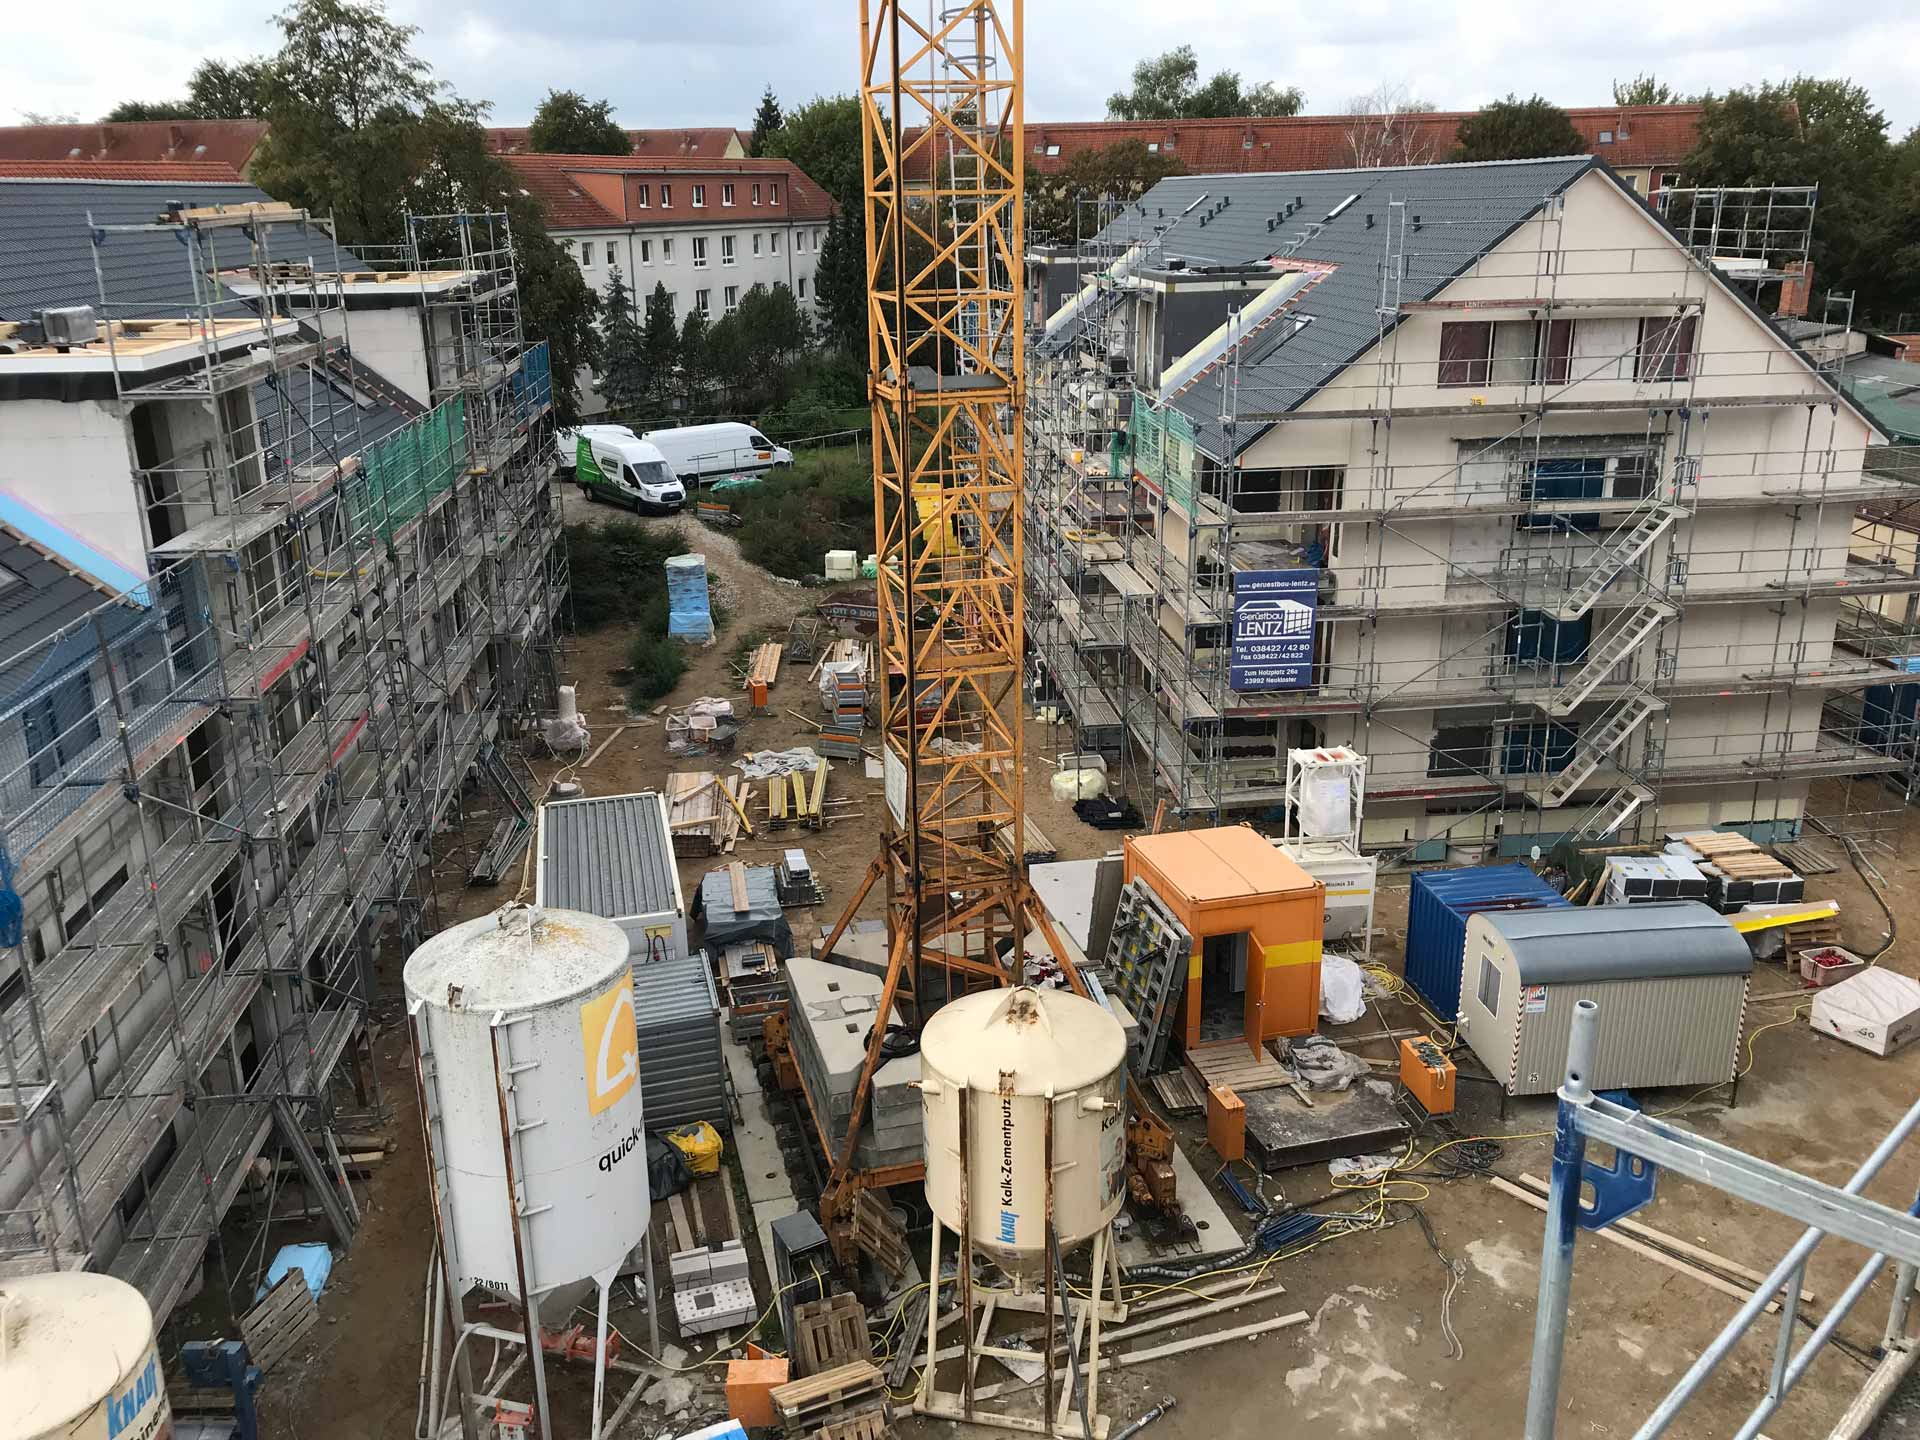 Wohnanlage Lübecker Straße in der Bauphase - Bild 4